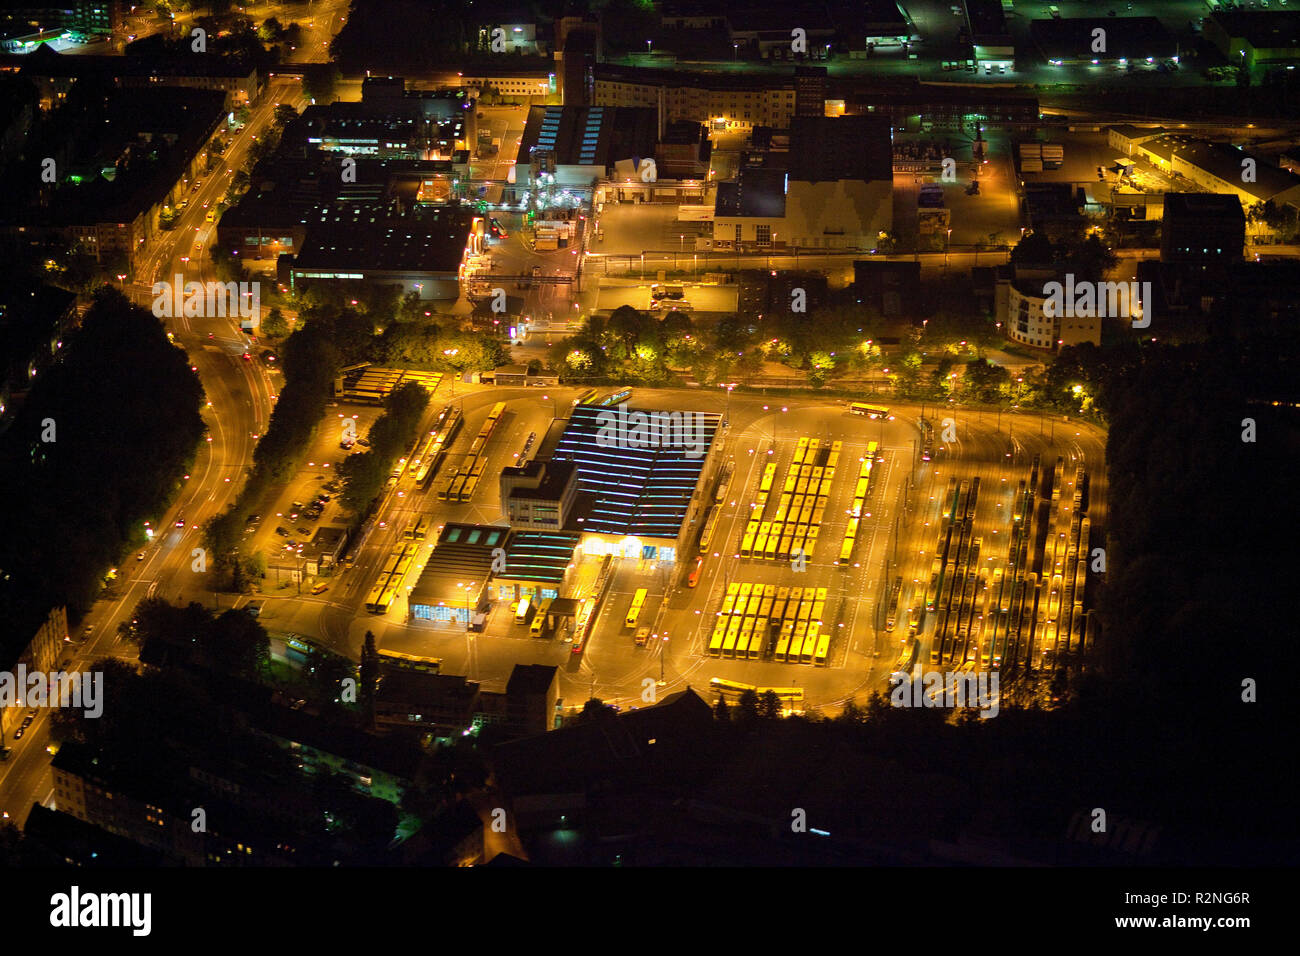 Vue aérienne, photo de nuit, l'EVAG dépôt de tramways, Essen, Ruhr, Rhénanie du Nord-Westphalie, Allemagne, Europe, Banque D'Images